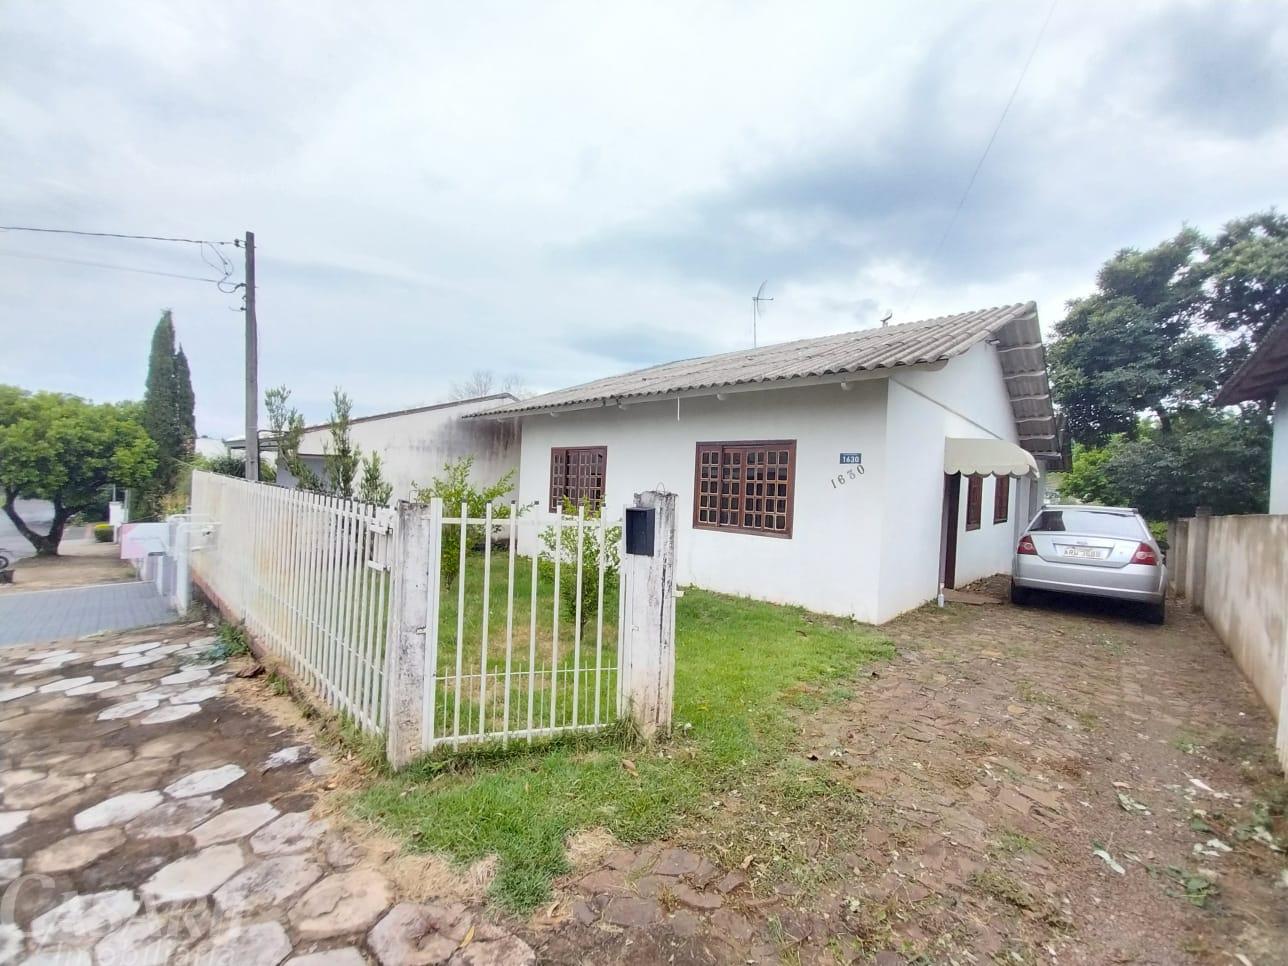 Casa Com 5 Dormitórios Para Locação, Vila Nova, Francisco Beltrao - Pr